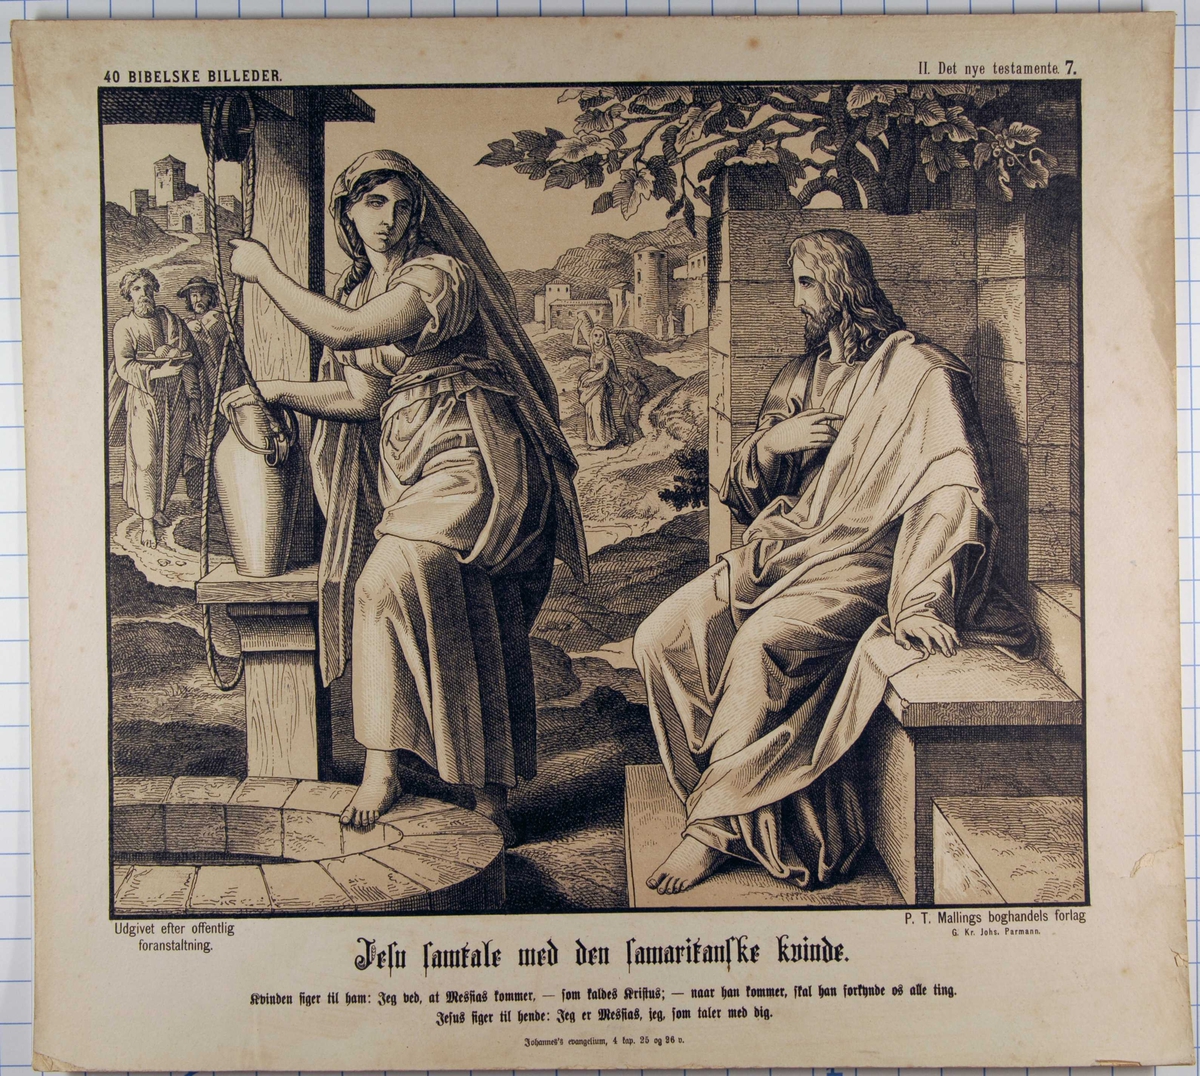 Jesu samtale med den samaritanske kvinnen.